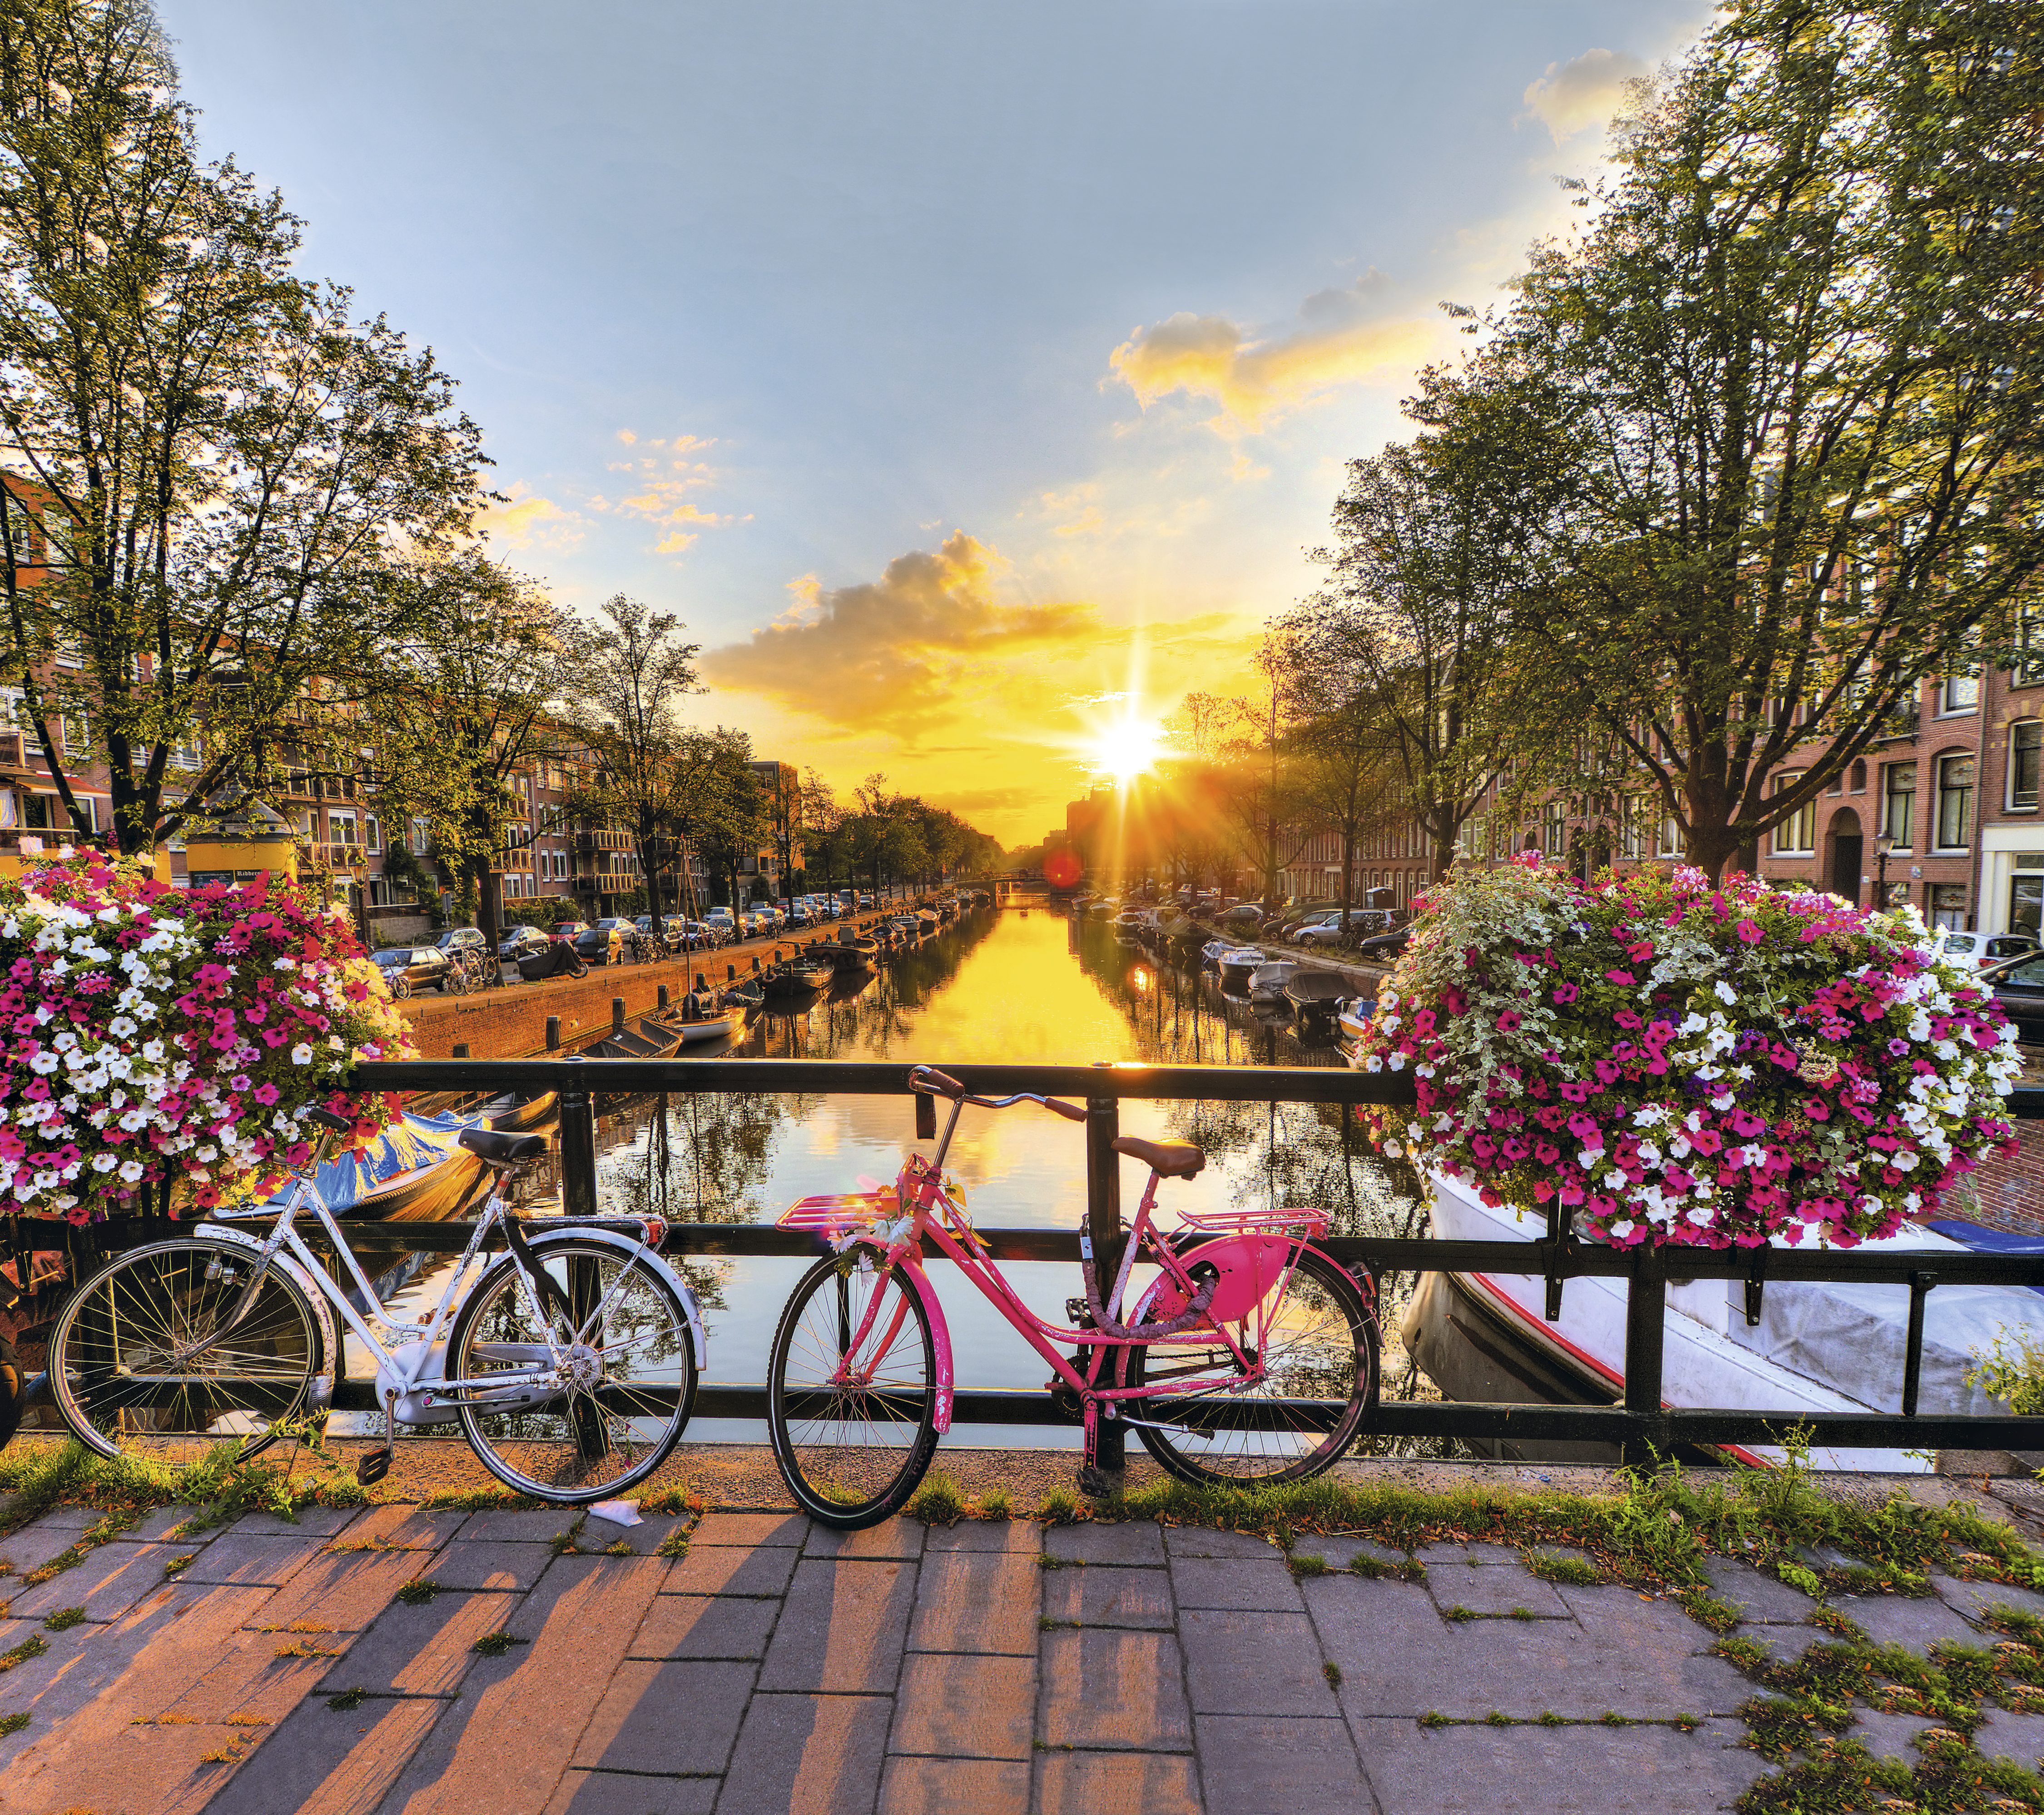 Clássicos de Amsterdã: bikes, barcos, pôr do sol e um canal. Crédito: